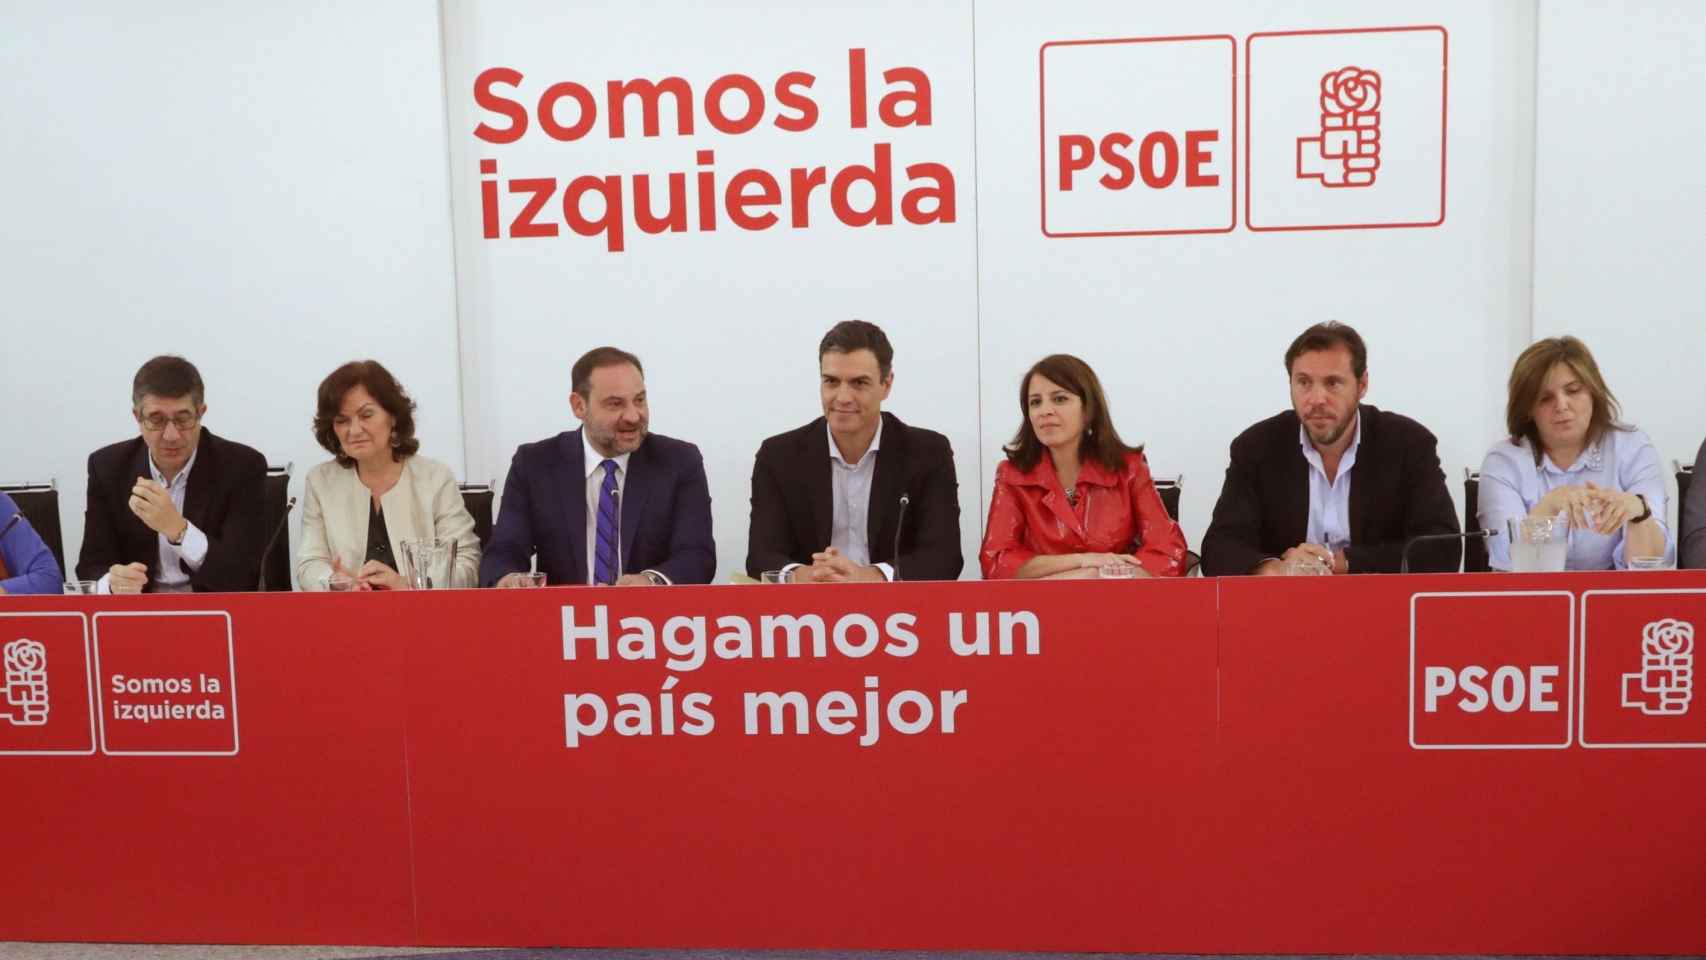 Reunión de la Ejecutiva del PSOE